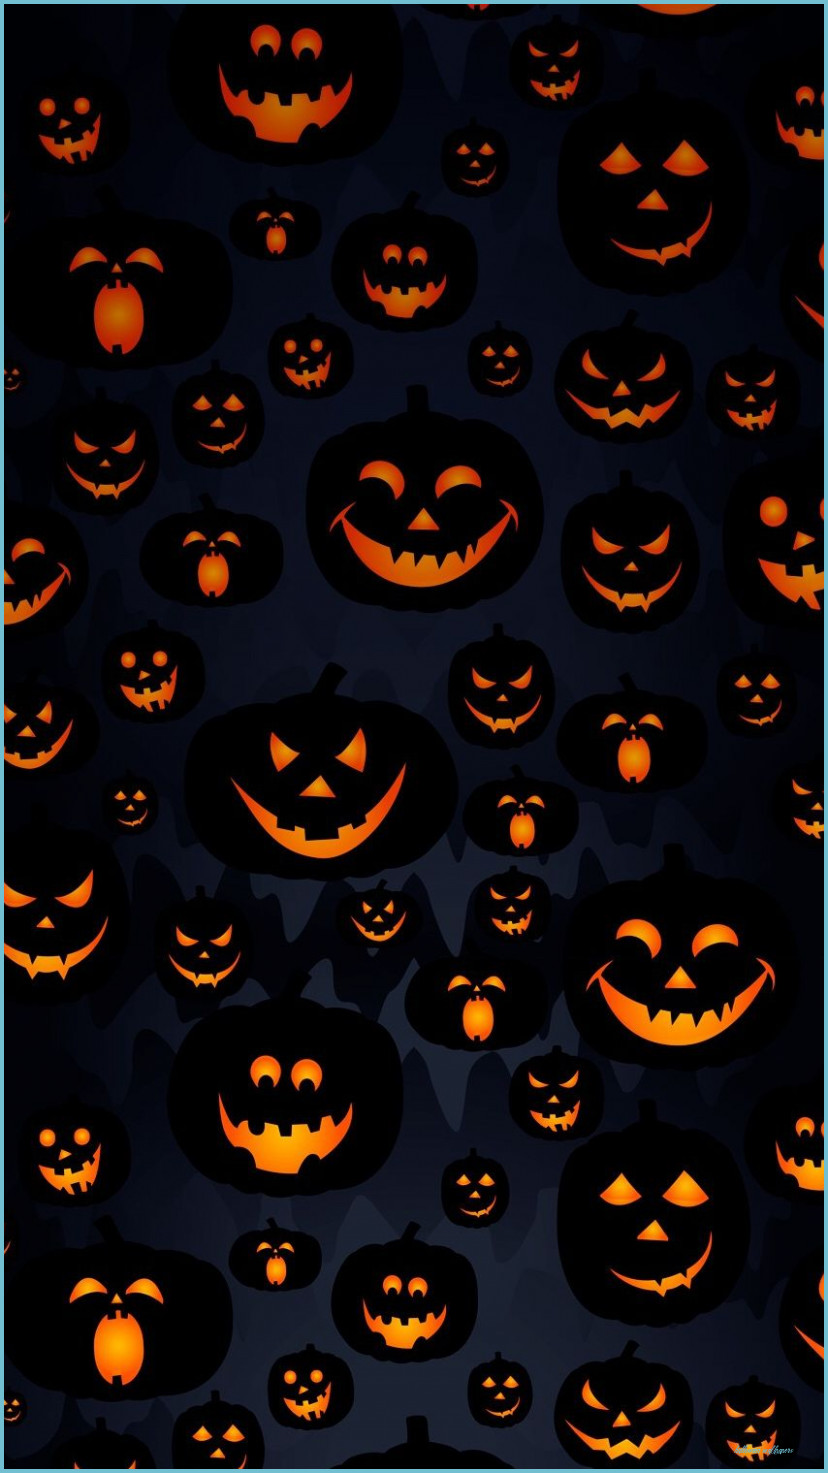 Scary Halloween Pumpkin Masks IPhone Wallpaper Halloween